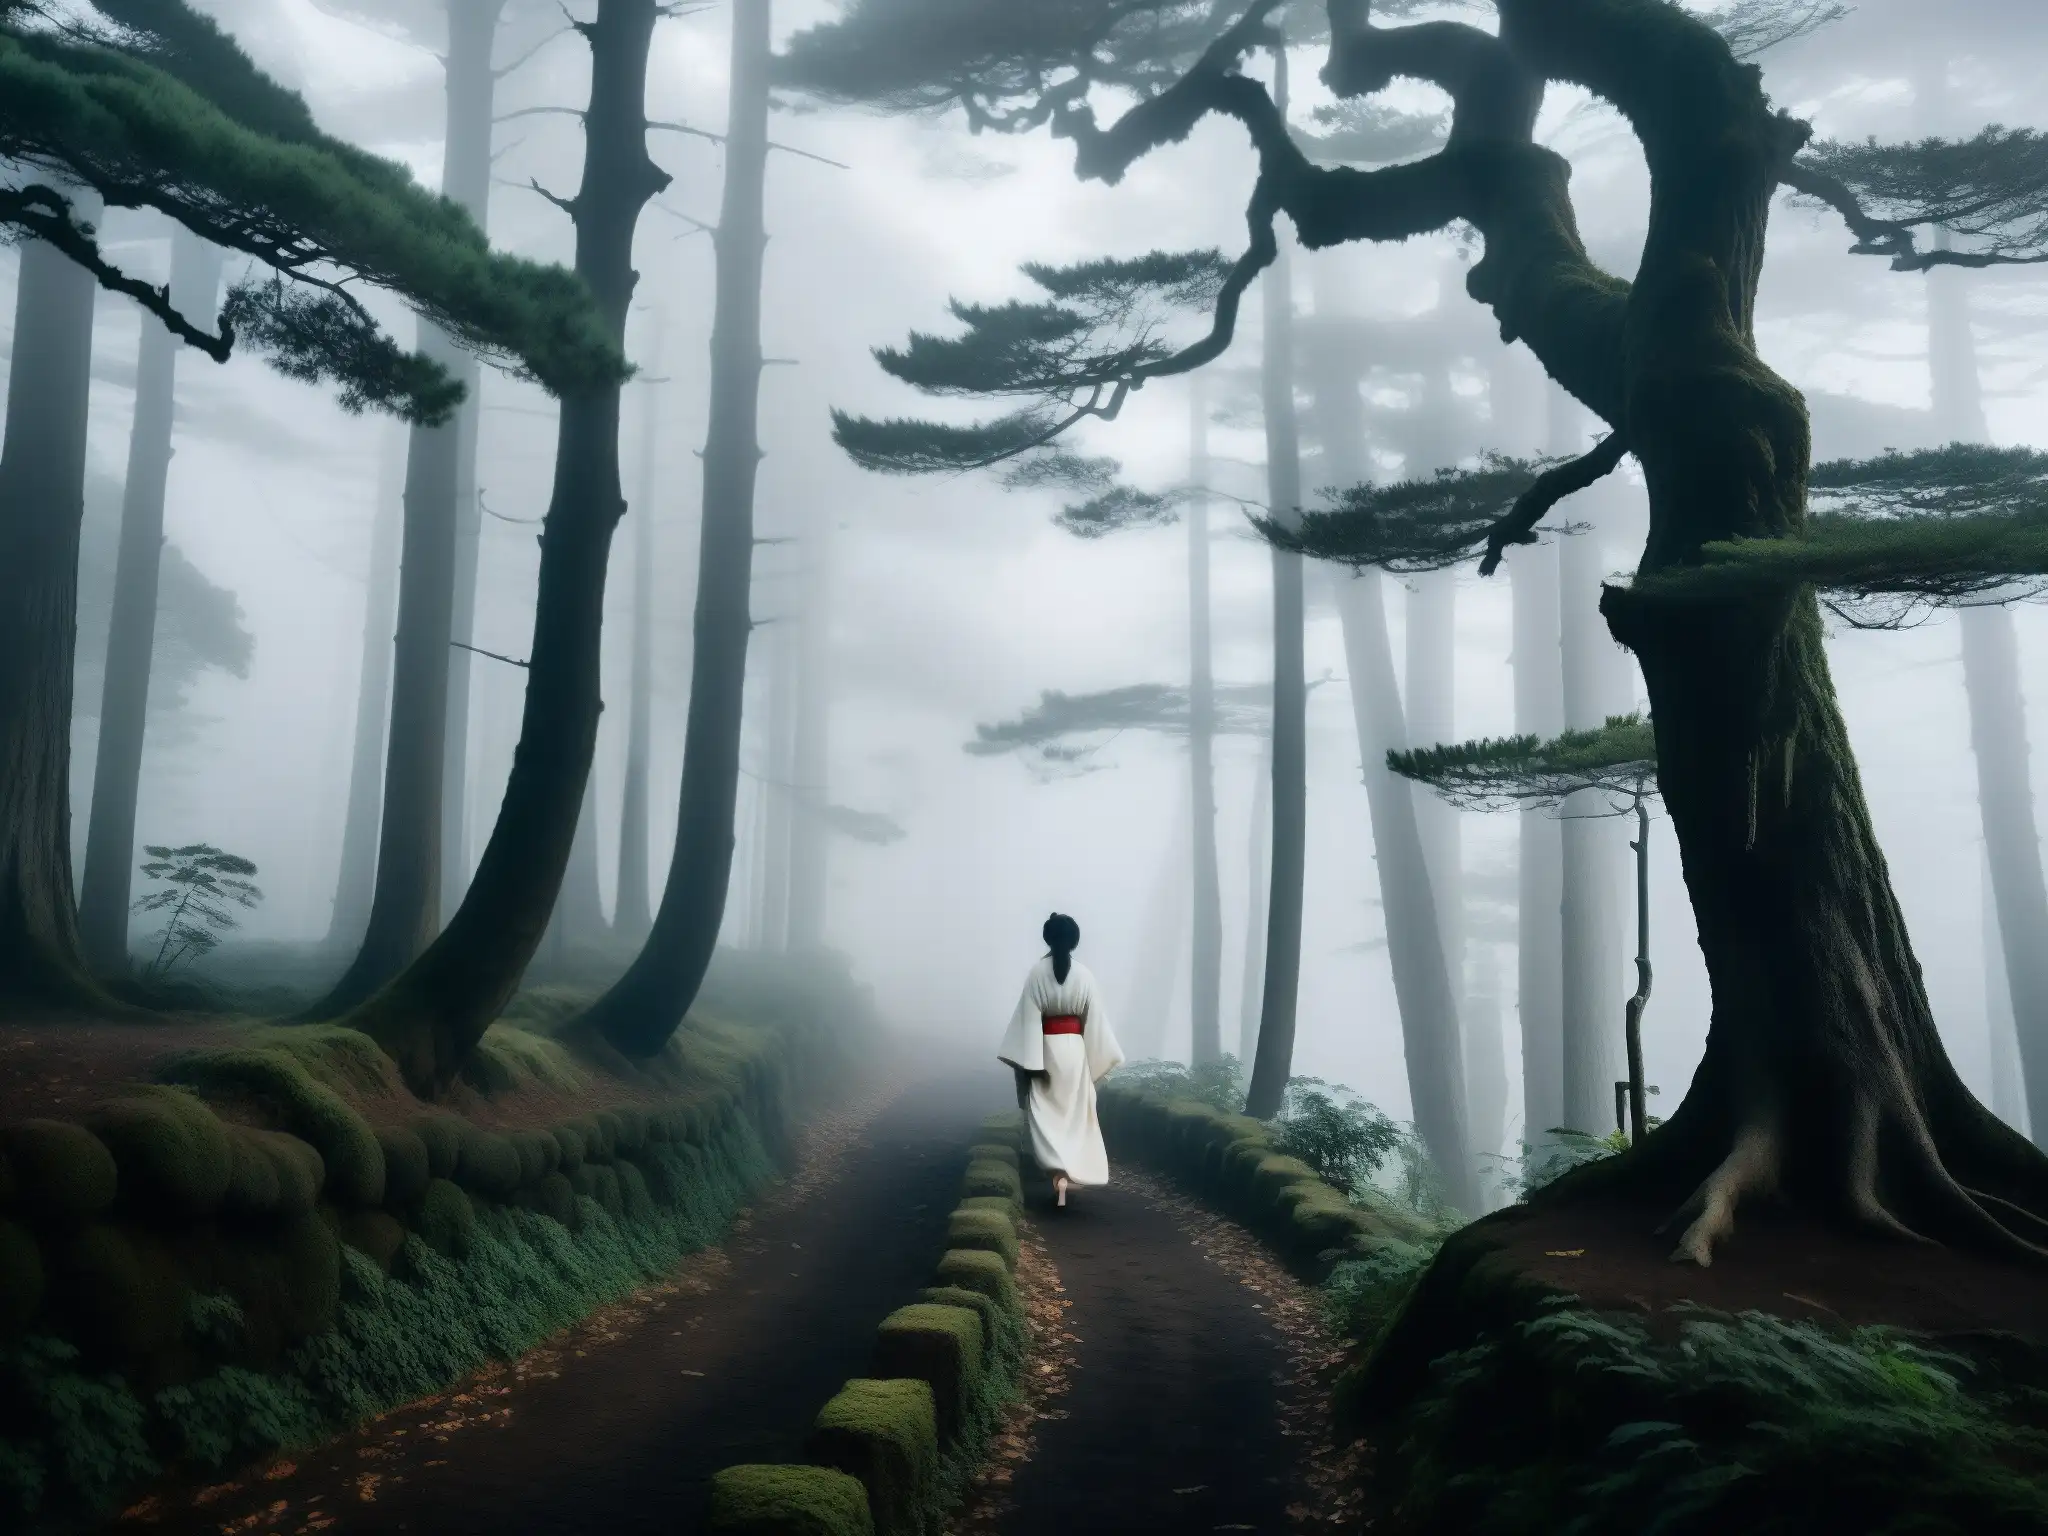 Camino en el bosque japonés con niebla densa y apariciones de mujer blanca, misterio y belleza etérea